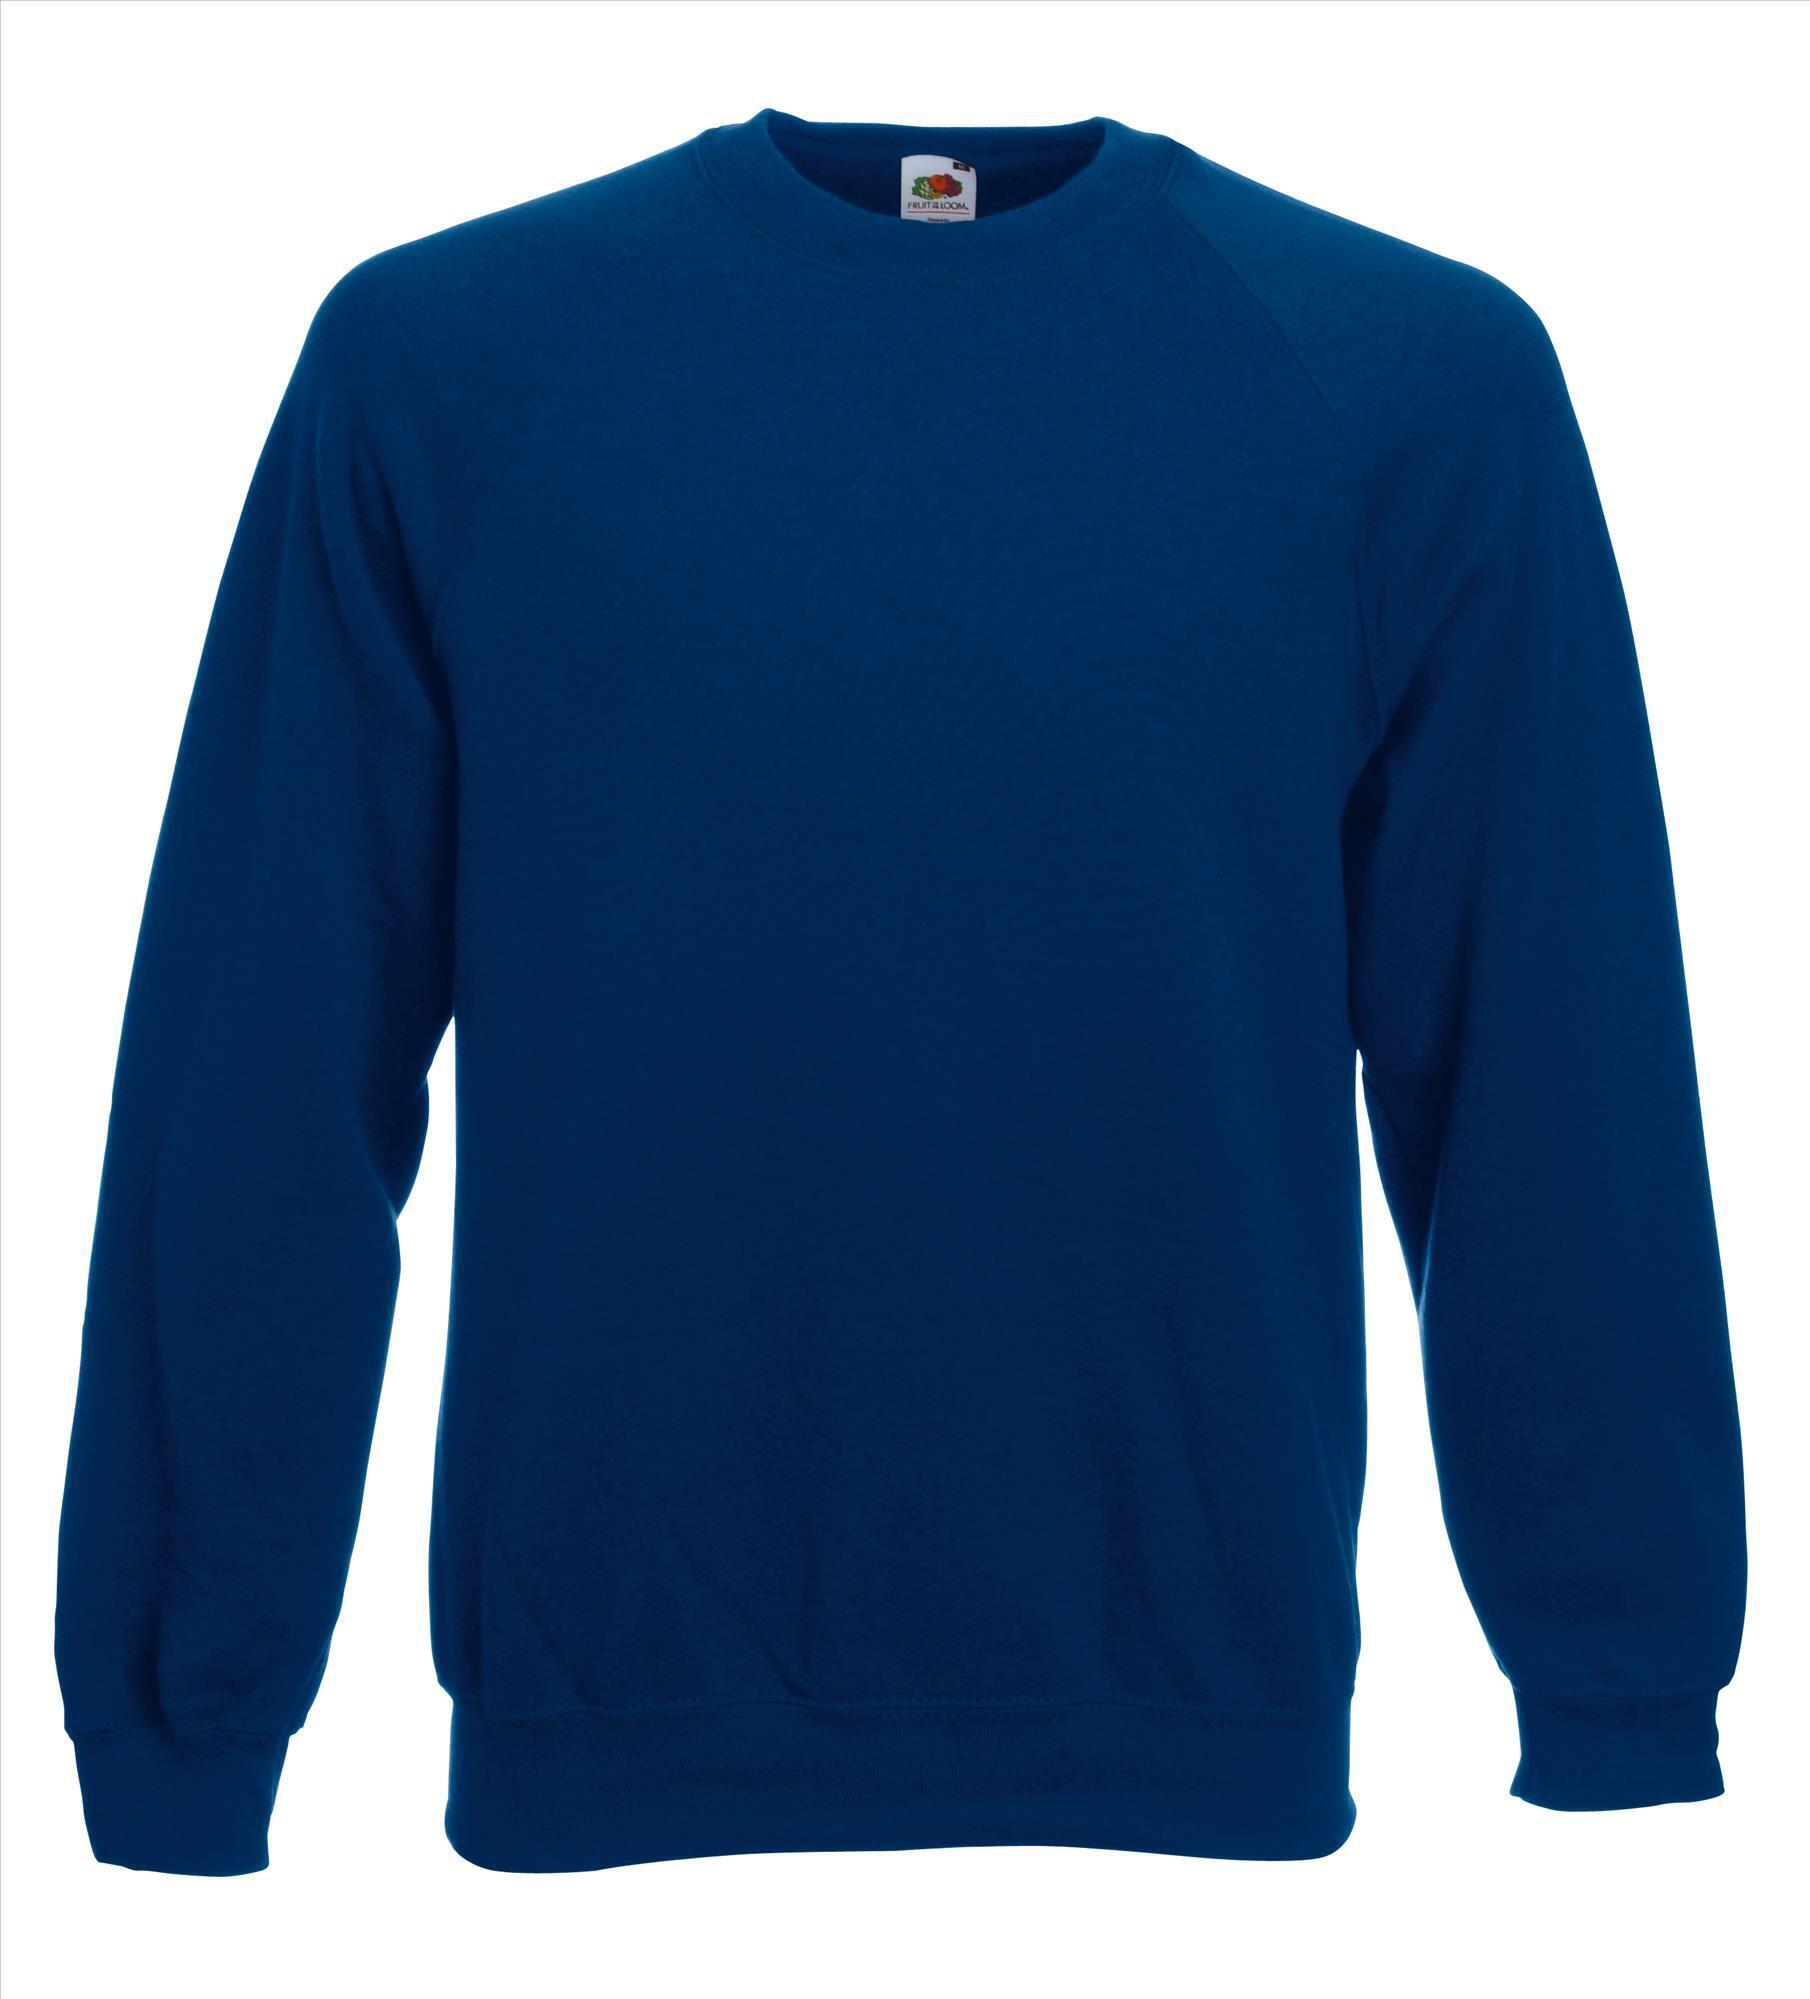 Sweater donkerblauw voor mannen bedrukbaar te personaliseren sweatshirts